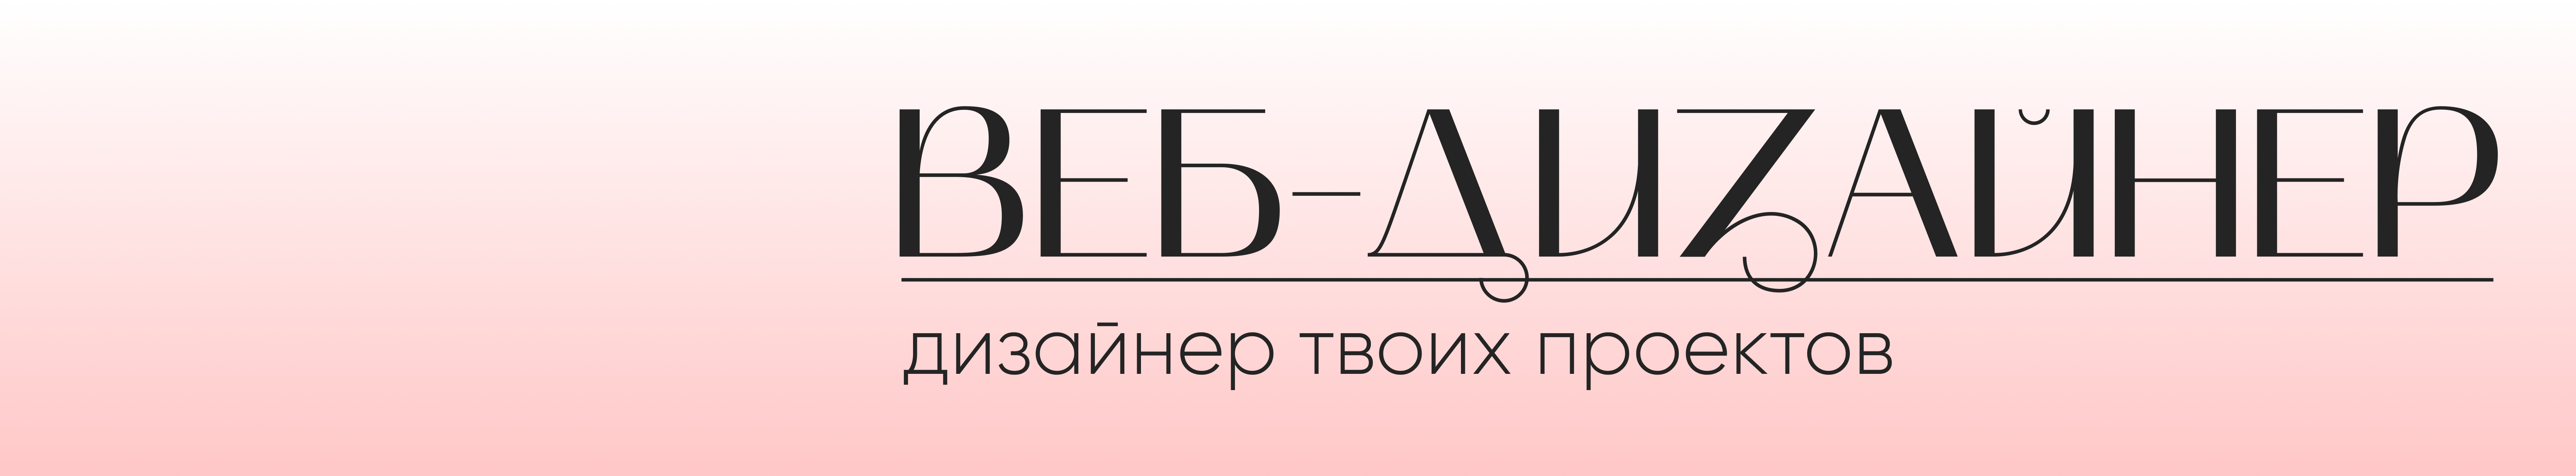 Екатерина Якимова's profile banner